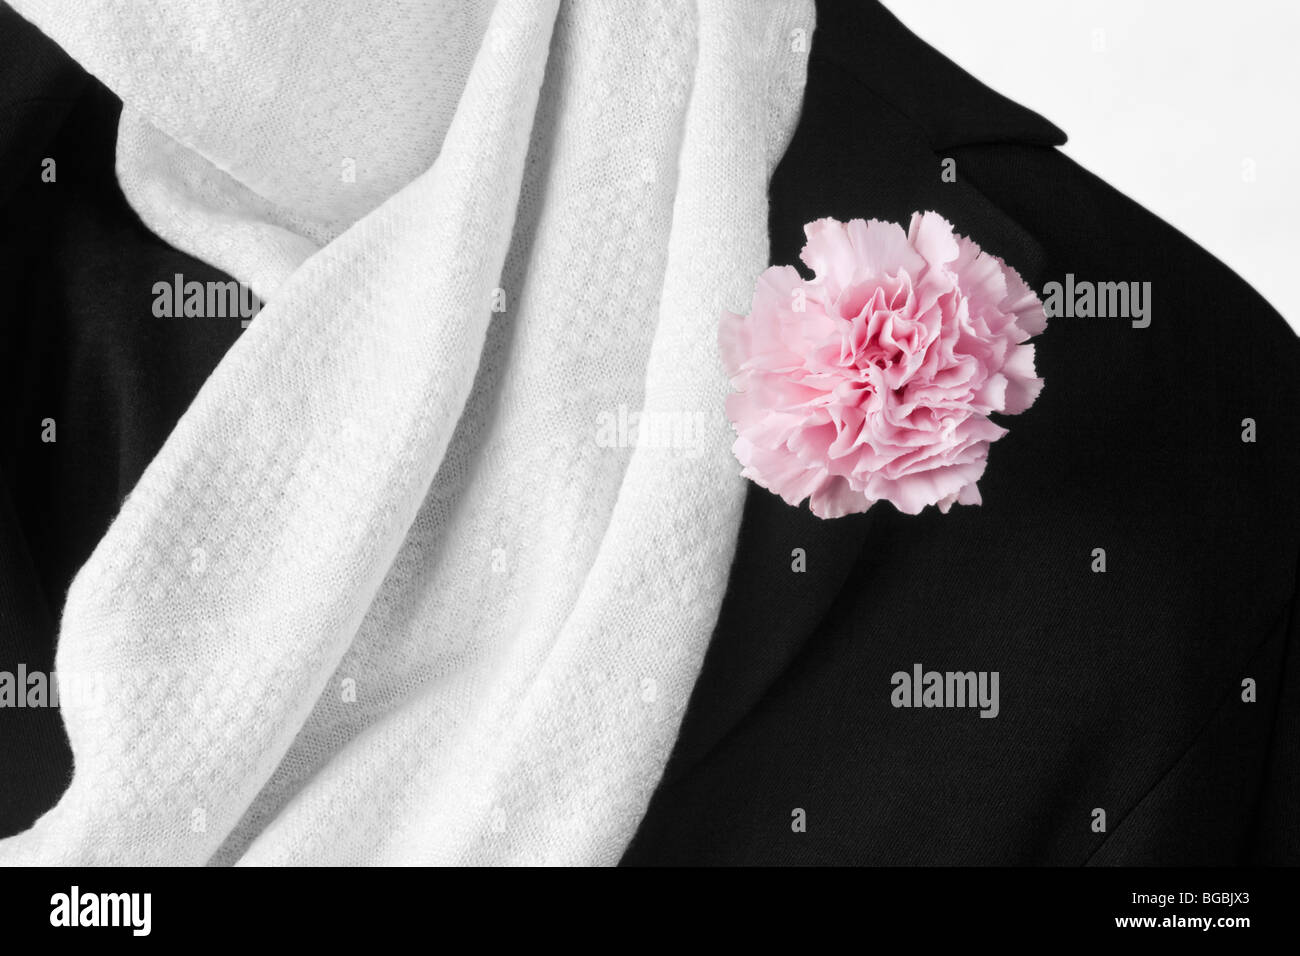 Primer plano de la bufanda de seda blanca y la chaqueta negra con una clavel rosa Foto de stock